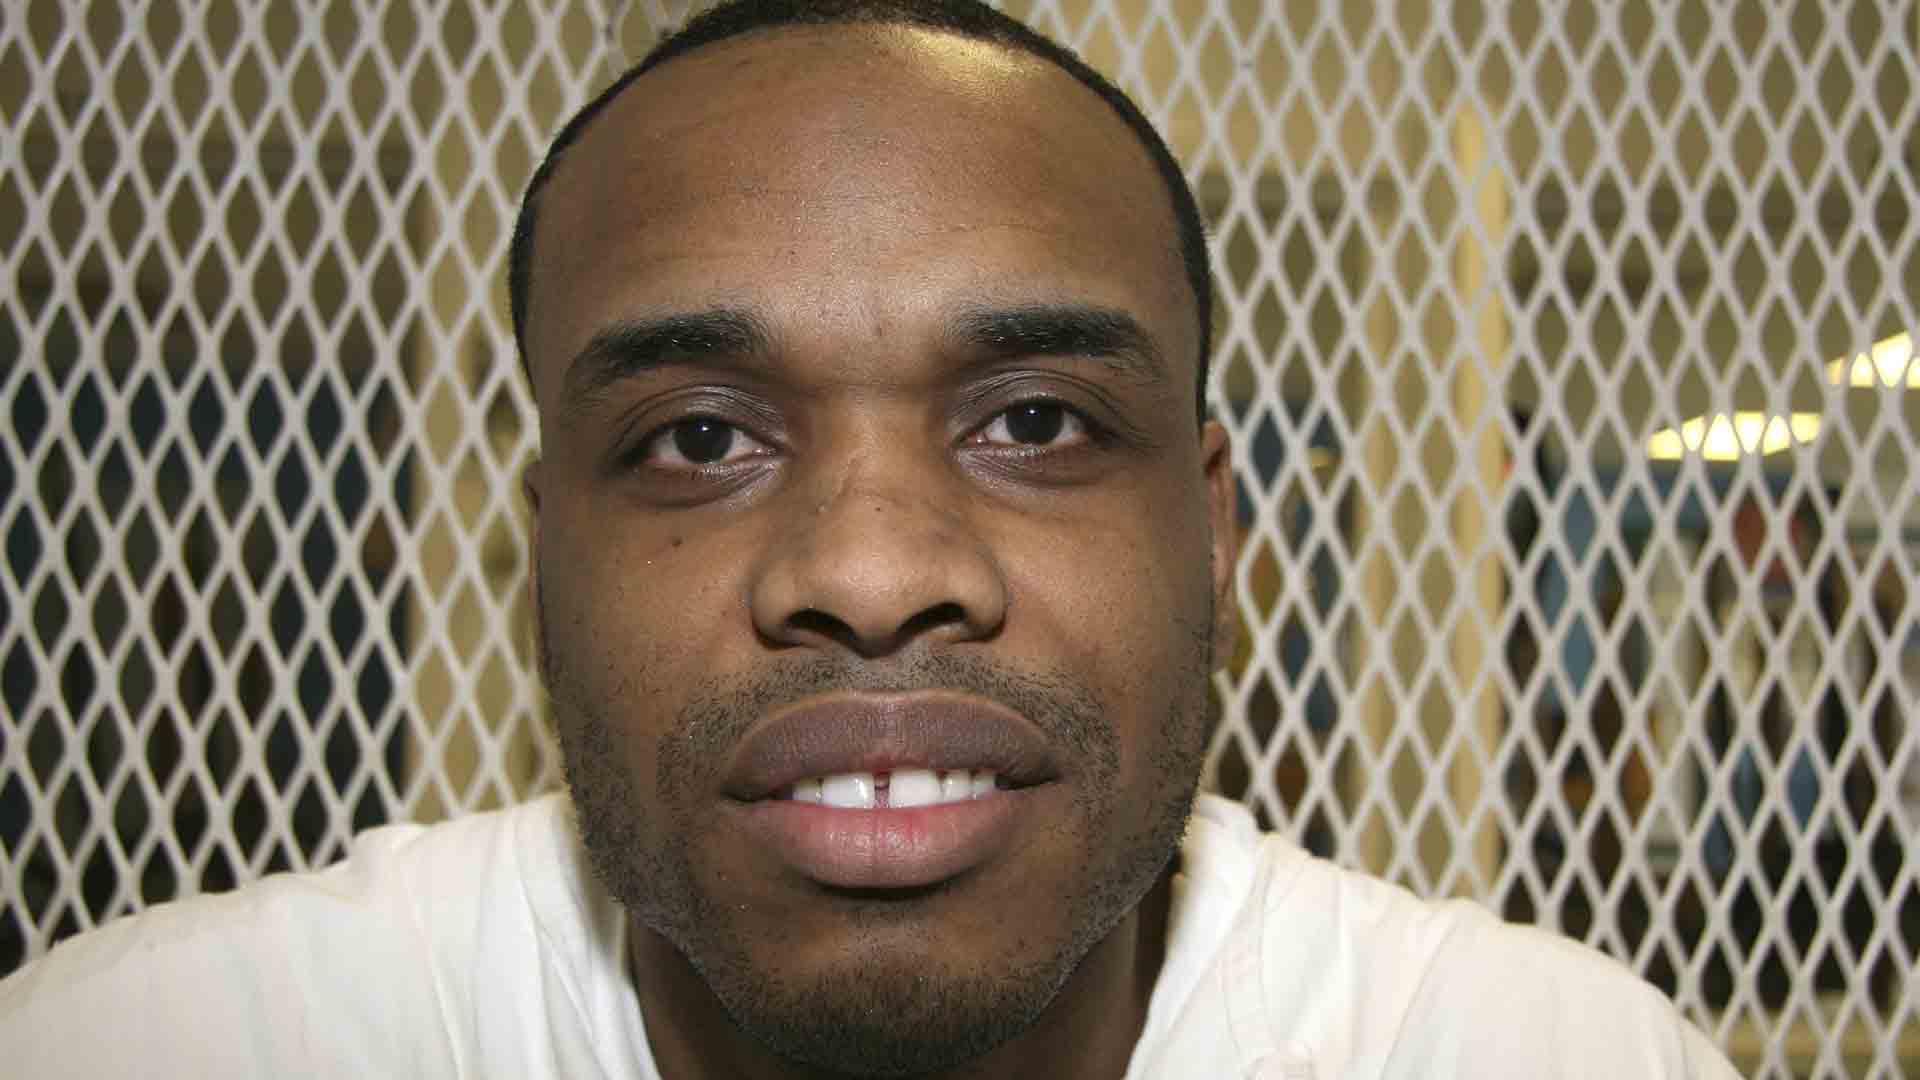 Texas ejecuta a un preso pese a las peticiones de indulto de la familia de su víctima